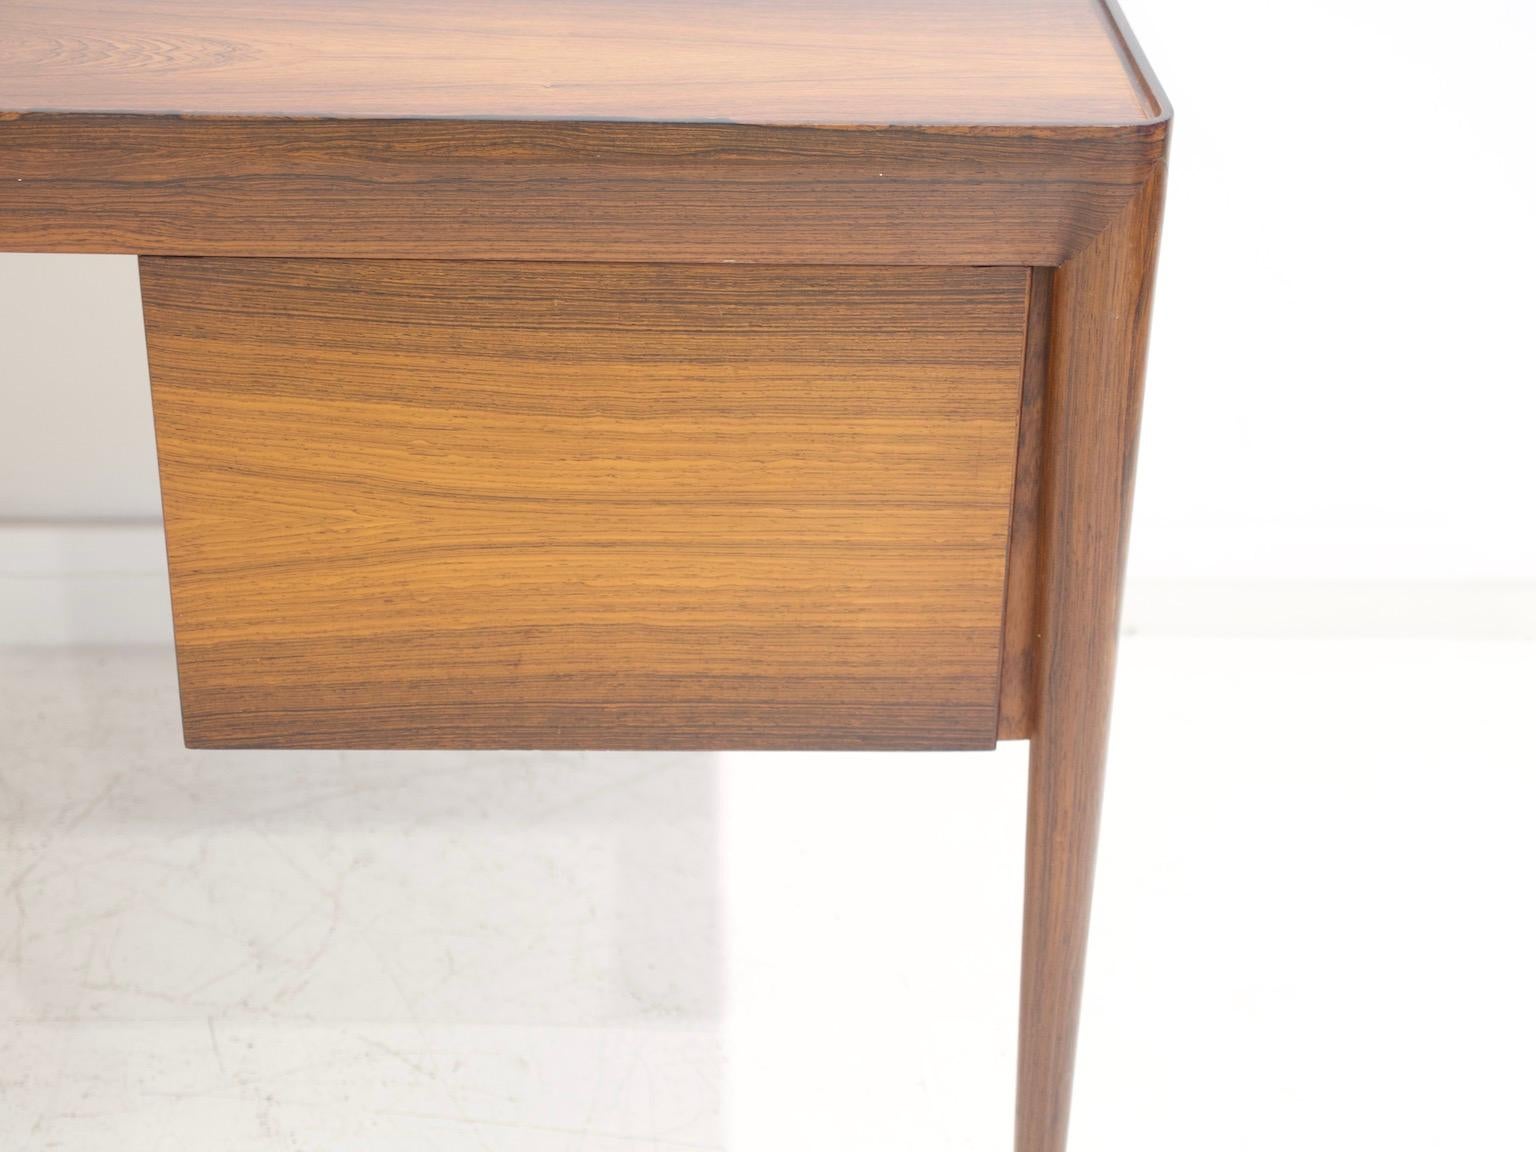 Minimalist Wooden Desk with Raised Edge by Erik Riisager Hansen 9